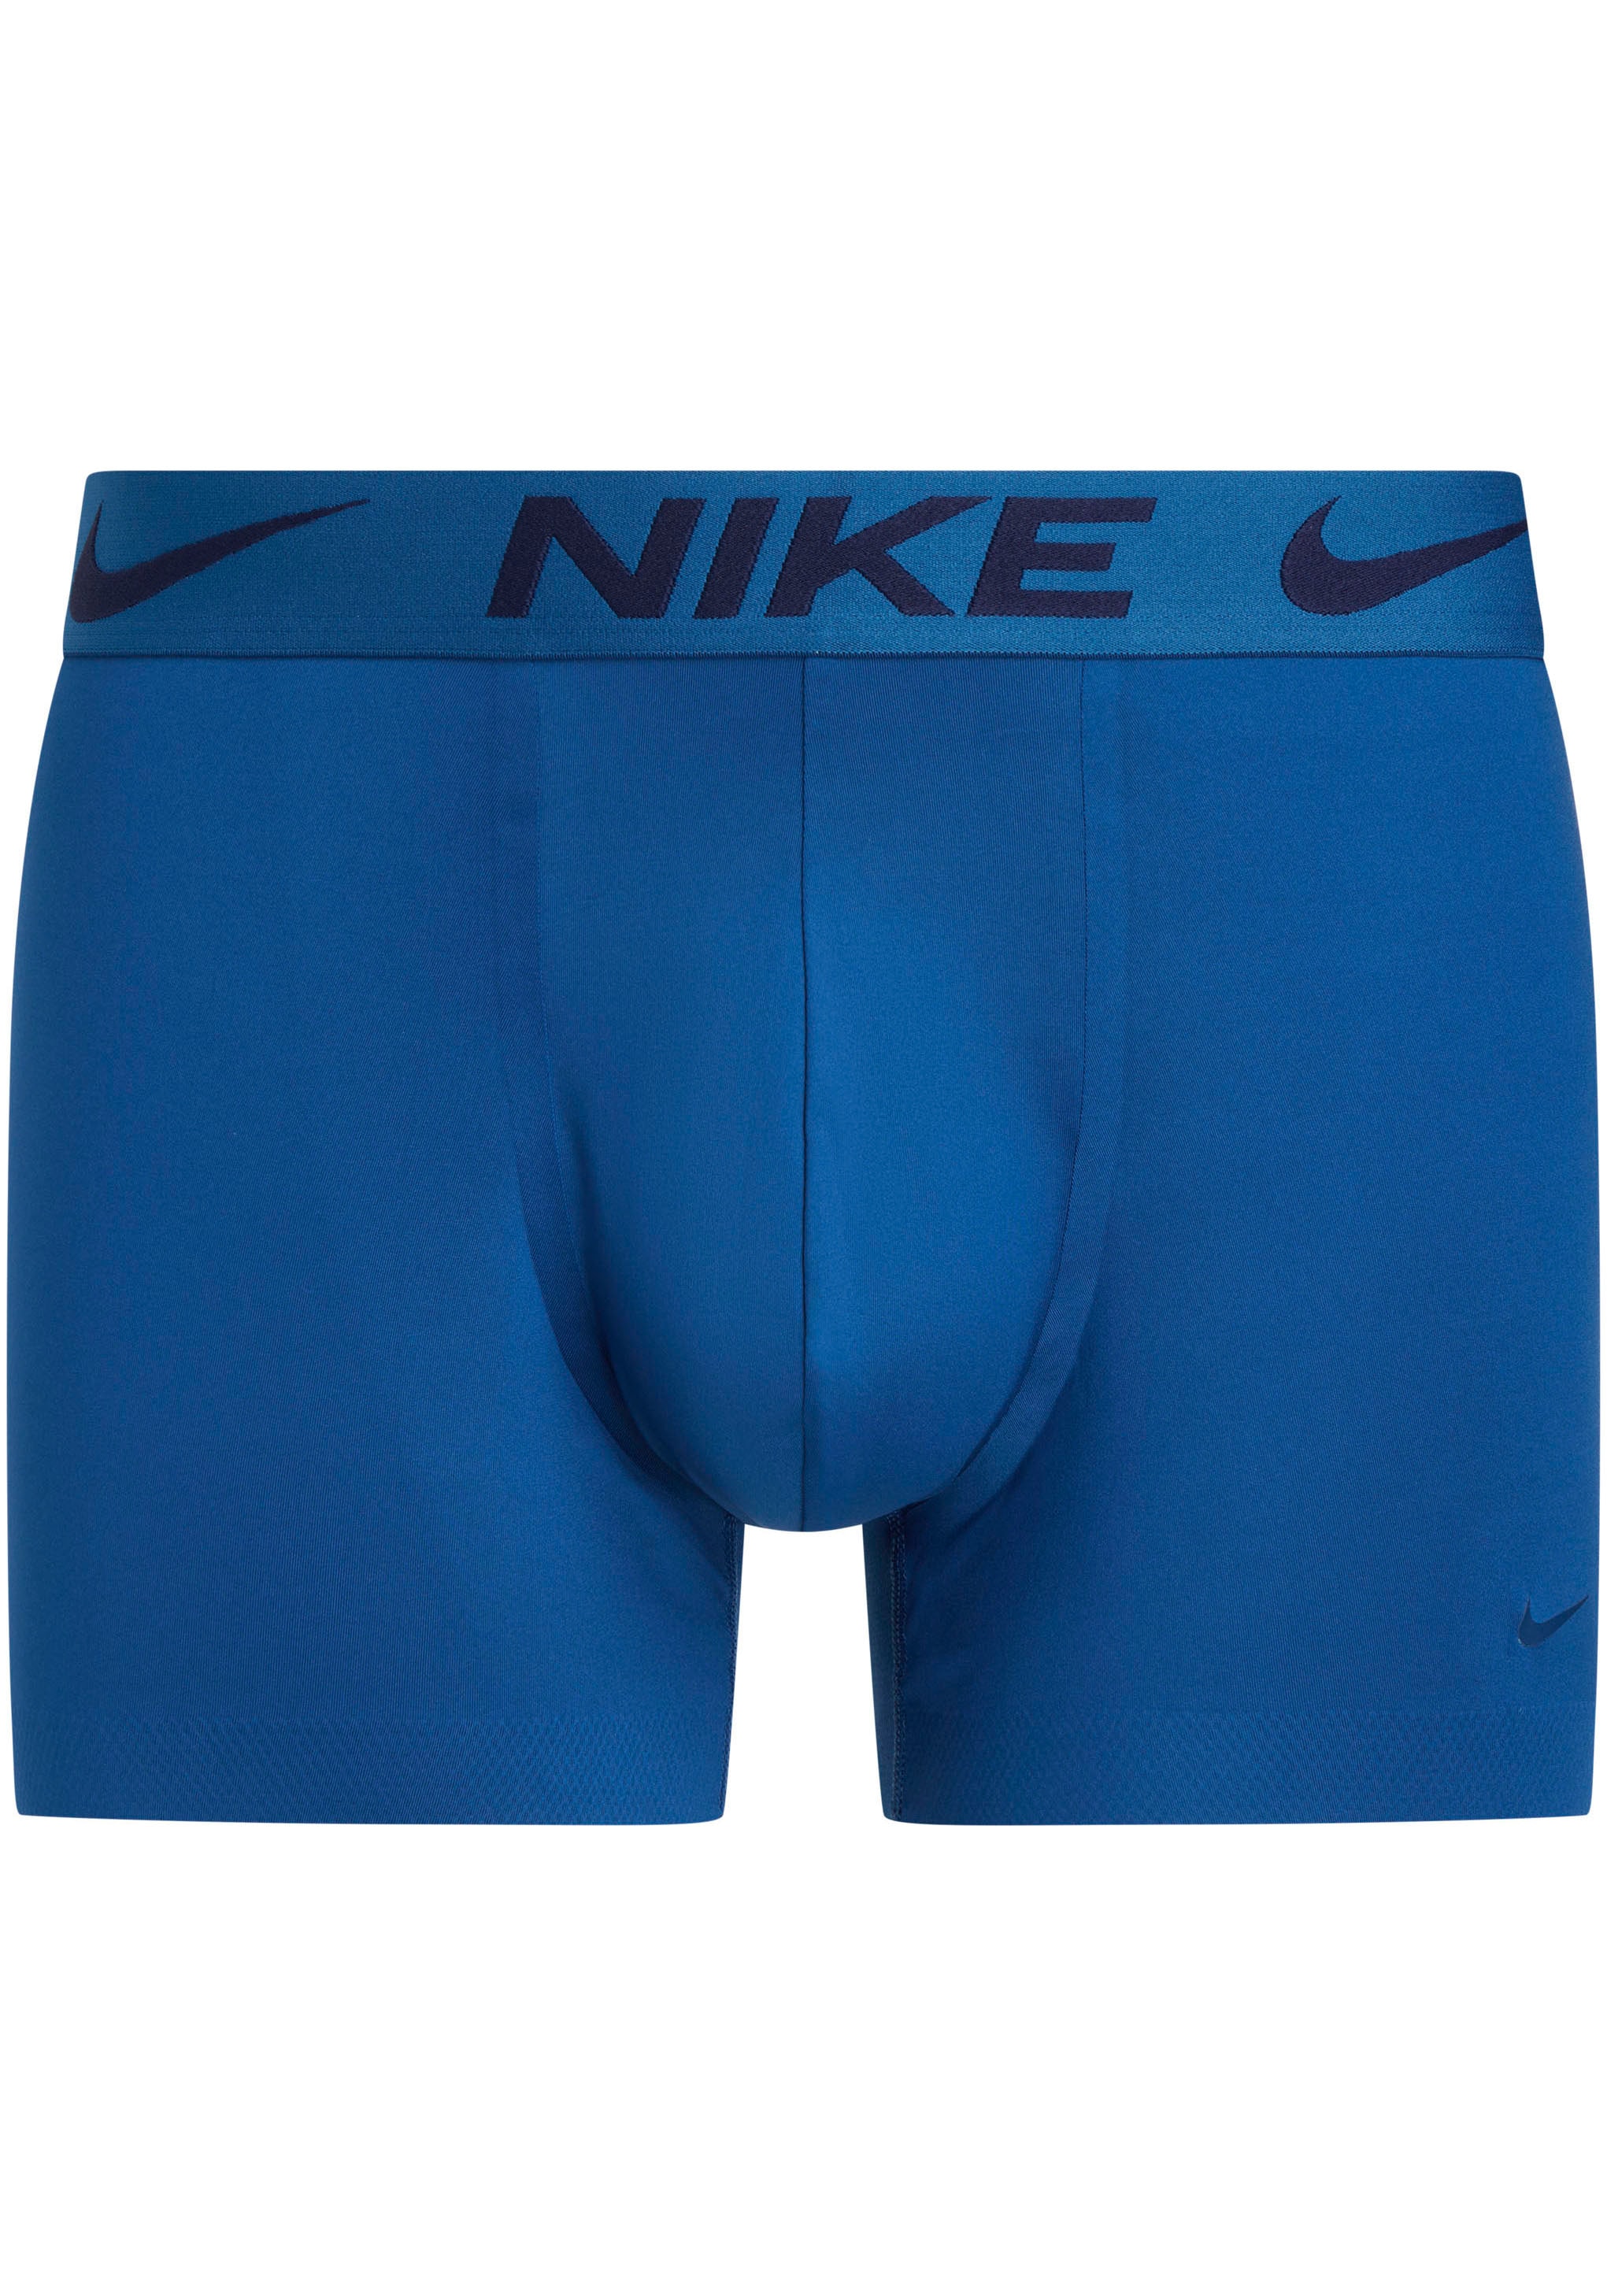 NIKE Underwear Trunk "TRUNK", mit Markenlabel